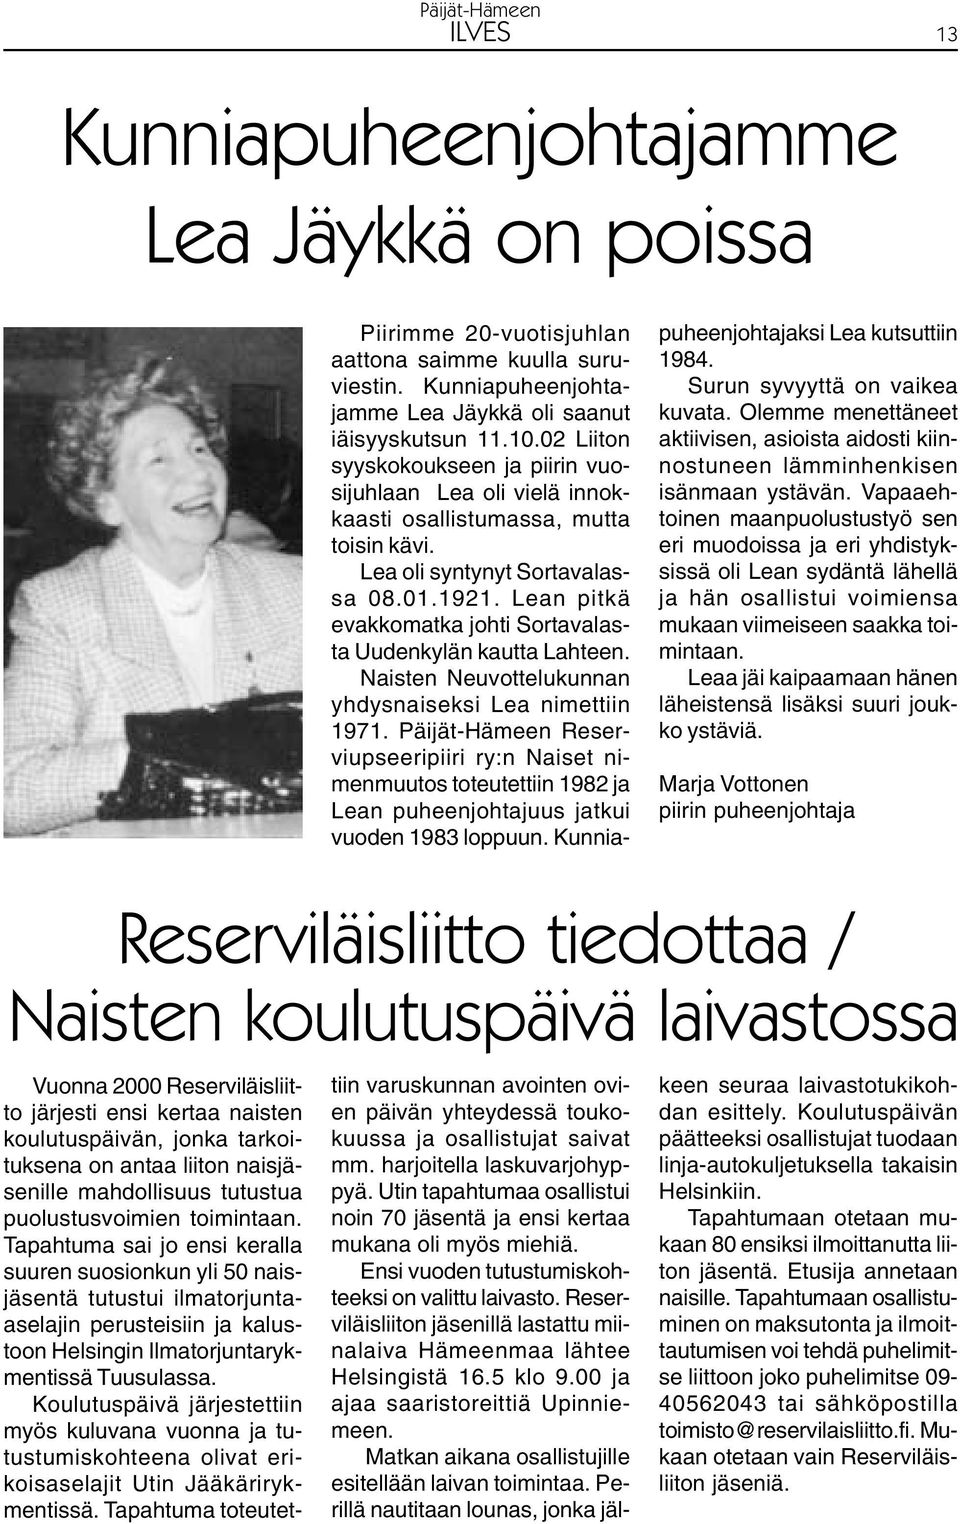 Lean pitkä evakkomatka johti Sortavalasta Uudenkylän kautta Lahteen. Naisten Neuvottelukunnan yhdysnaiseksi Lea nimettiin 1971.